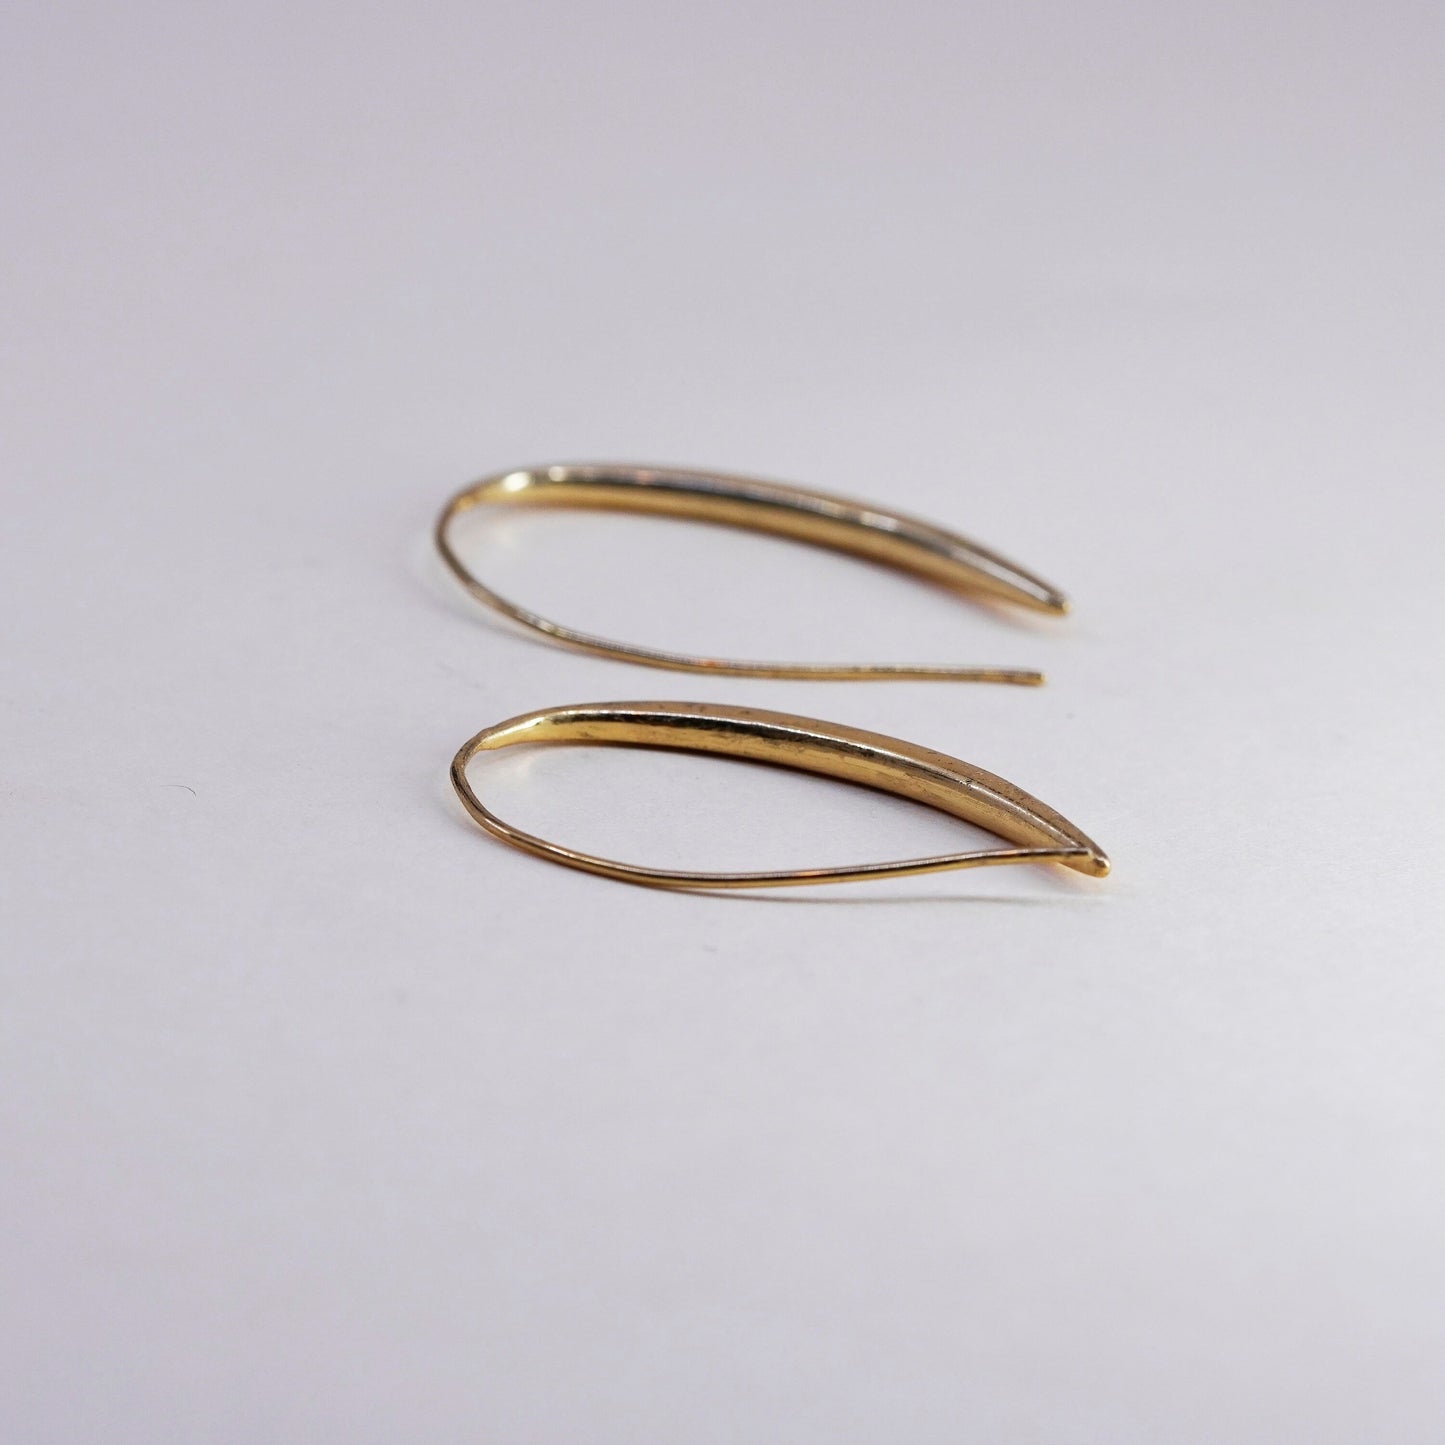 1.5”, Vintage vermeil gold over sterling silver loop earrings, minimalist